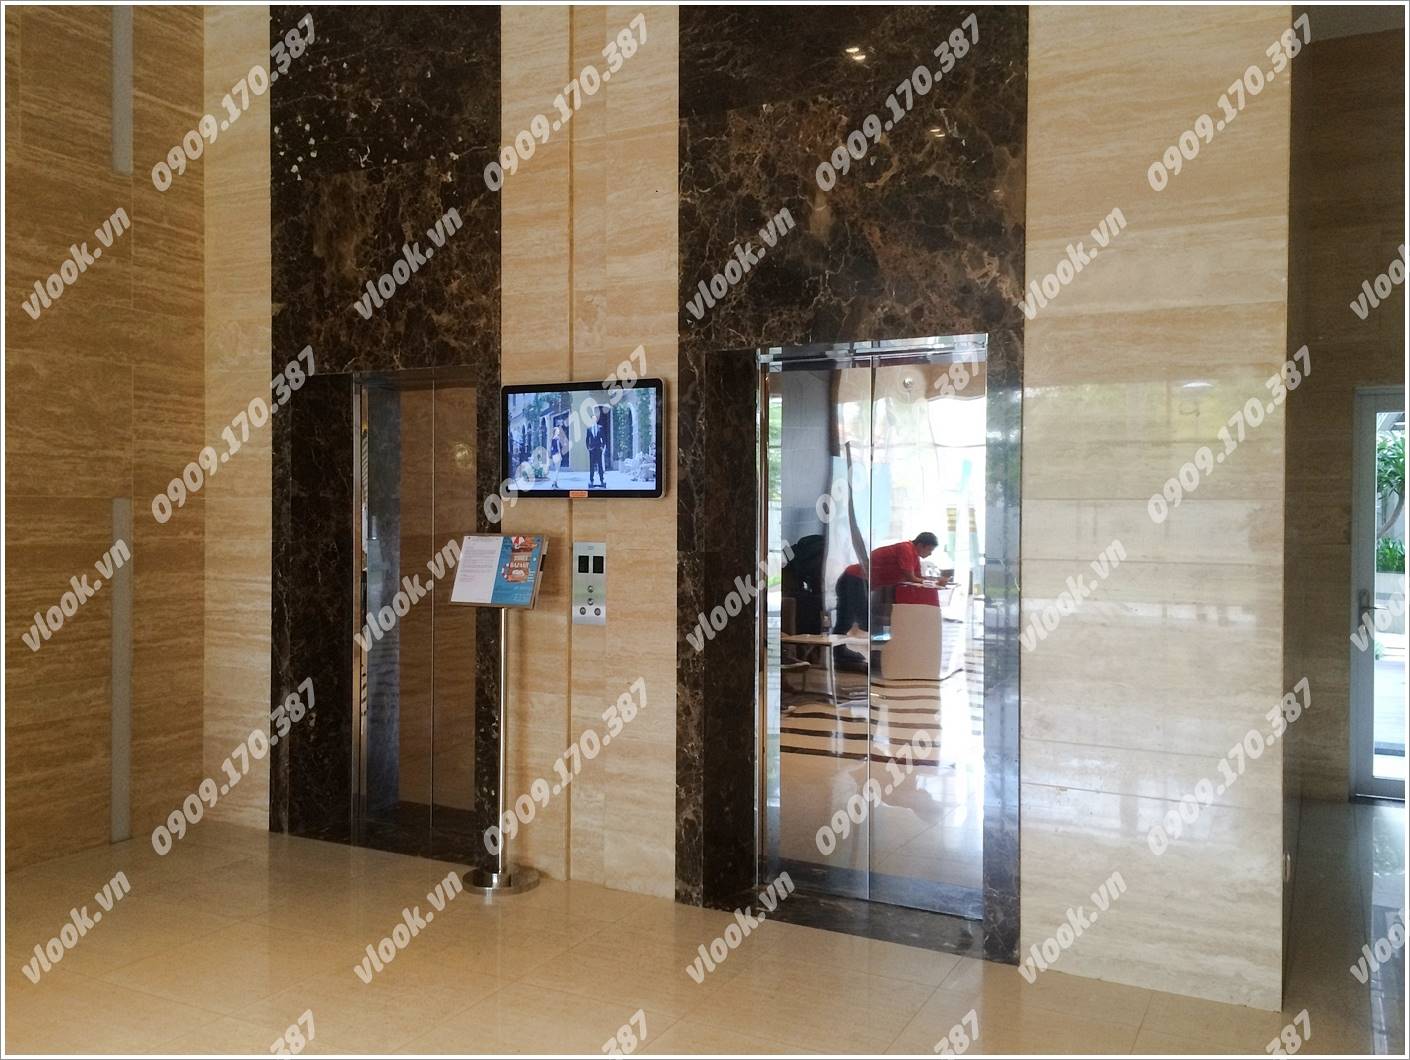 Cao ốc văn phòng cho thuê văn phòng The Prince Residence, Nguyễn Văn Trỗi, Quận Phú Nhuận, TP.HCM - vlook.vn